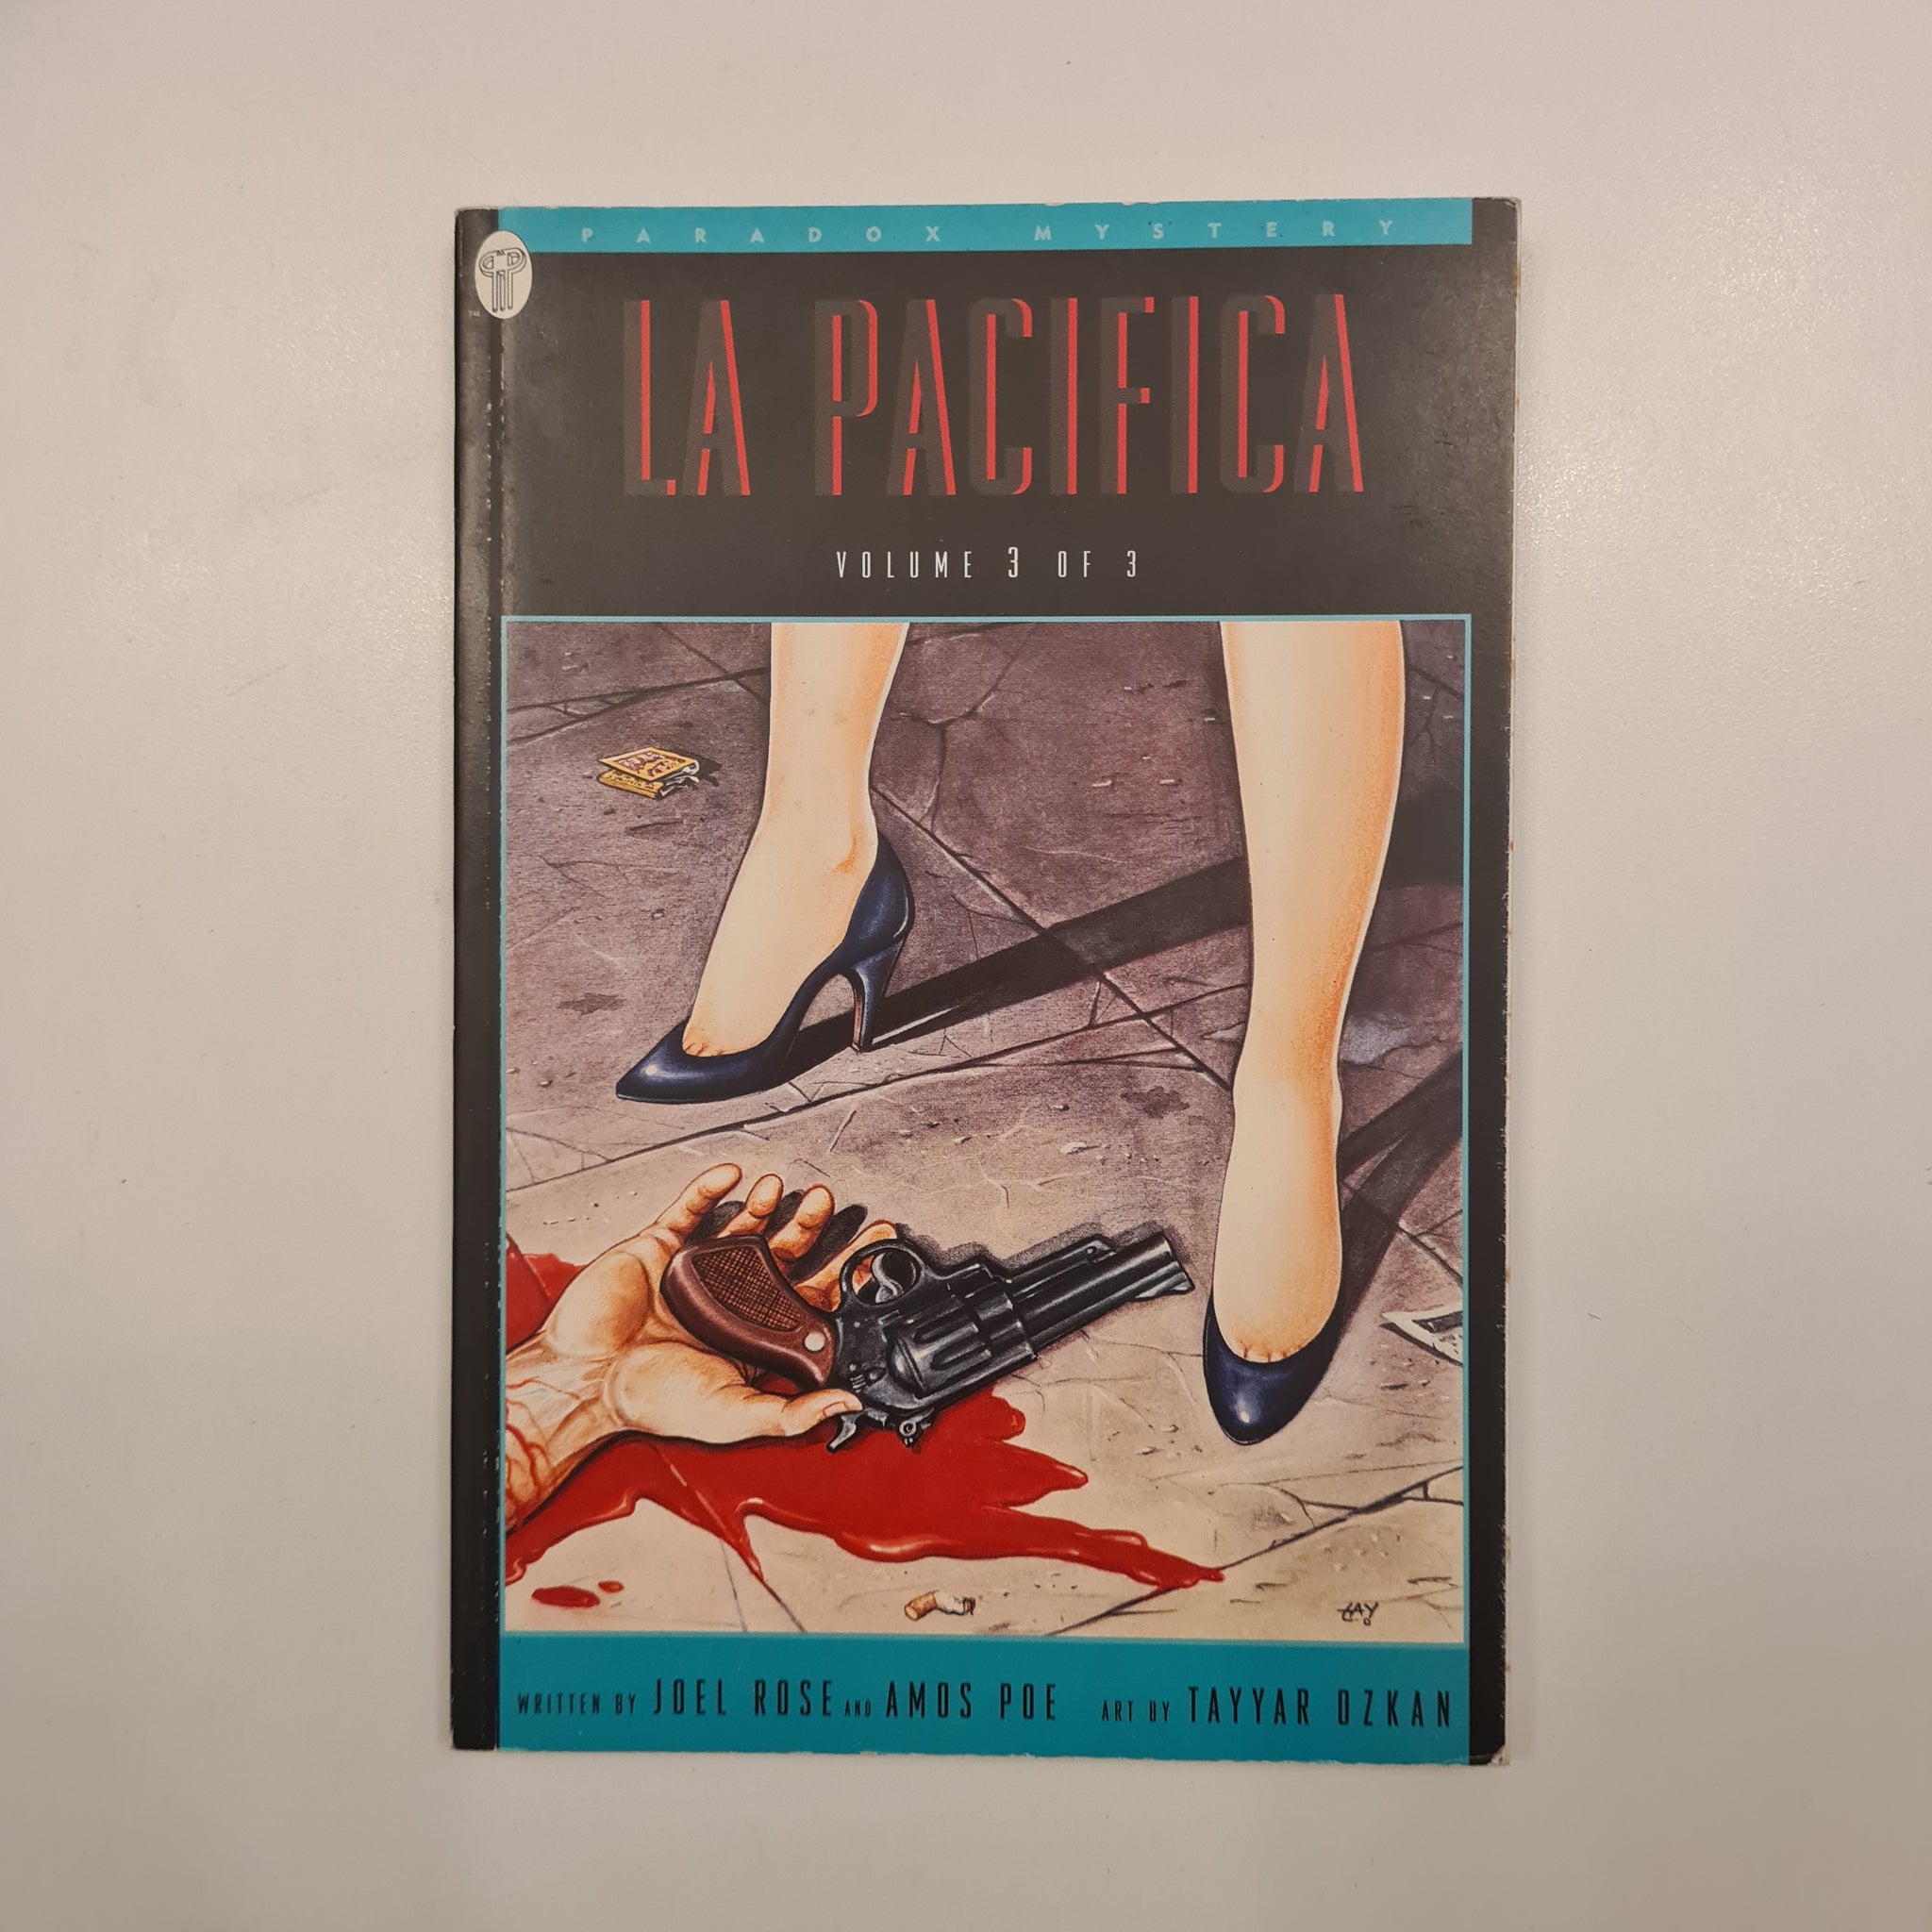 LA PACIFICA, Volume 3 of 3